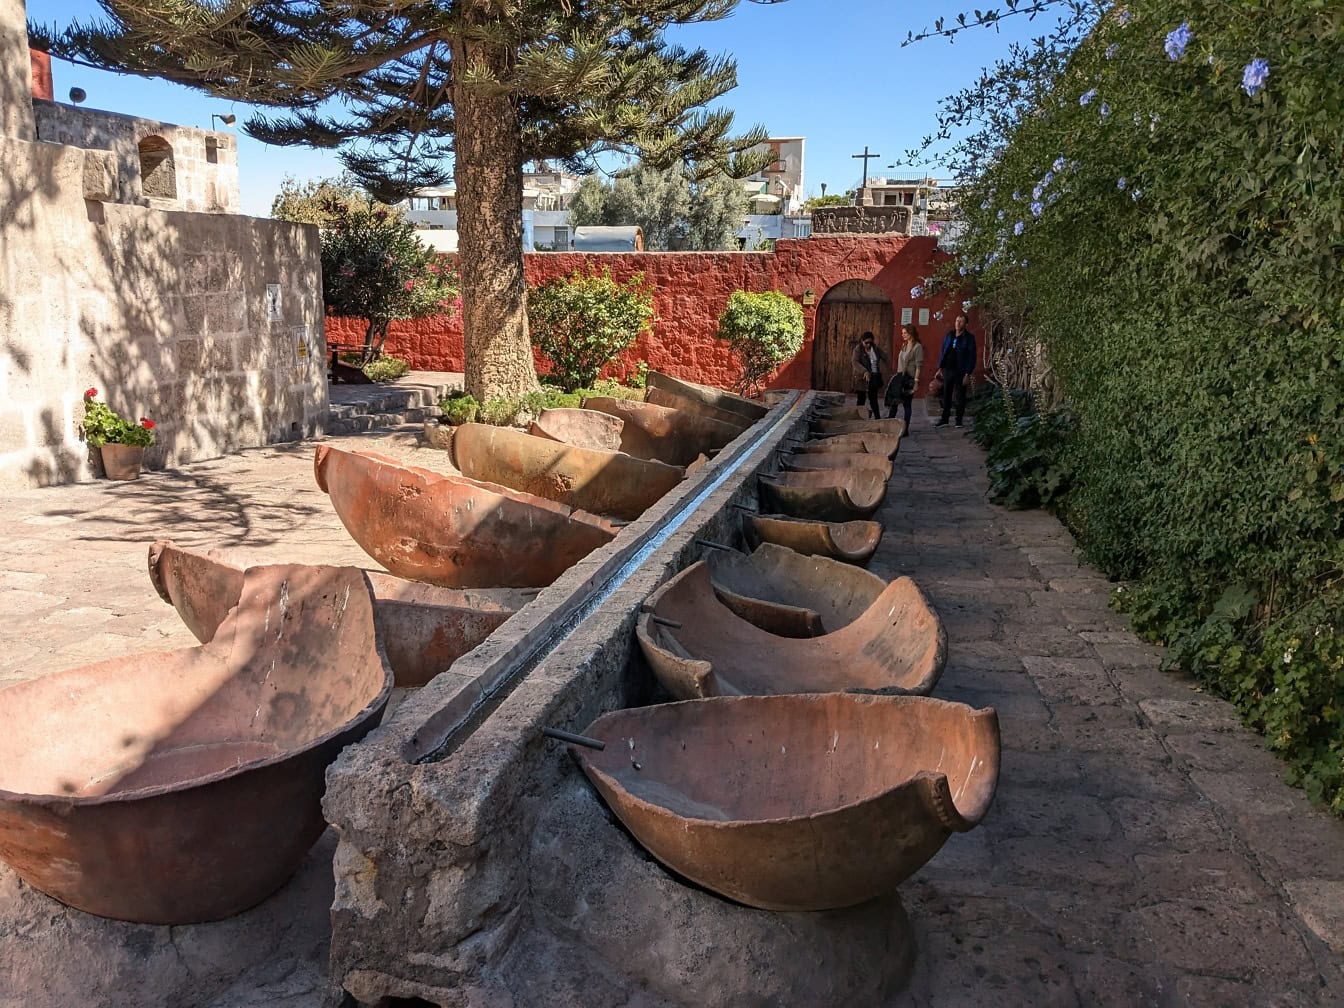 Fontána s veľkými misami na kamenných blokoch v záhrade kláštora Santa Catalina v Arequipe, Peru